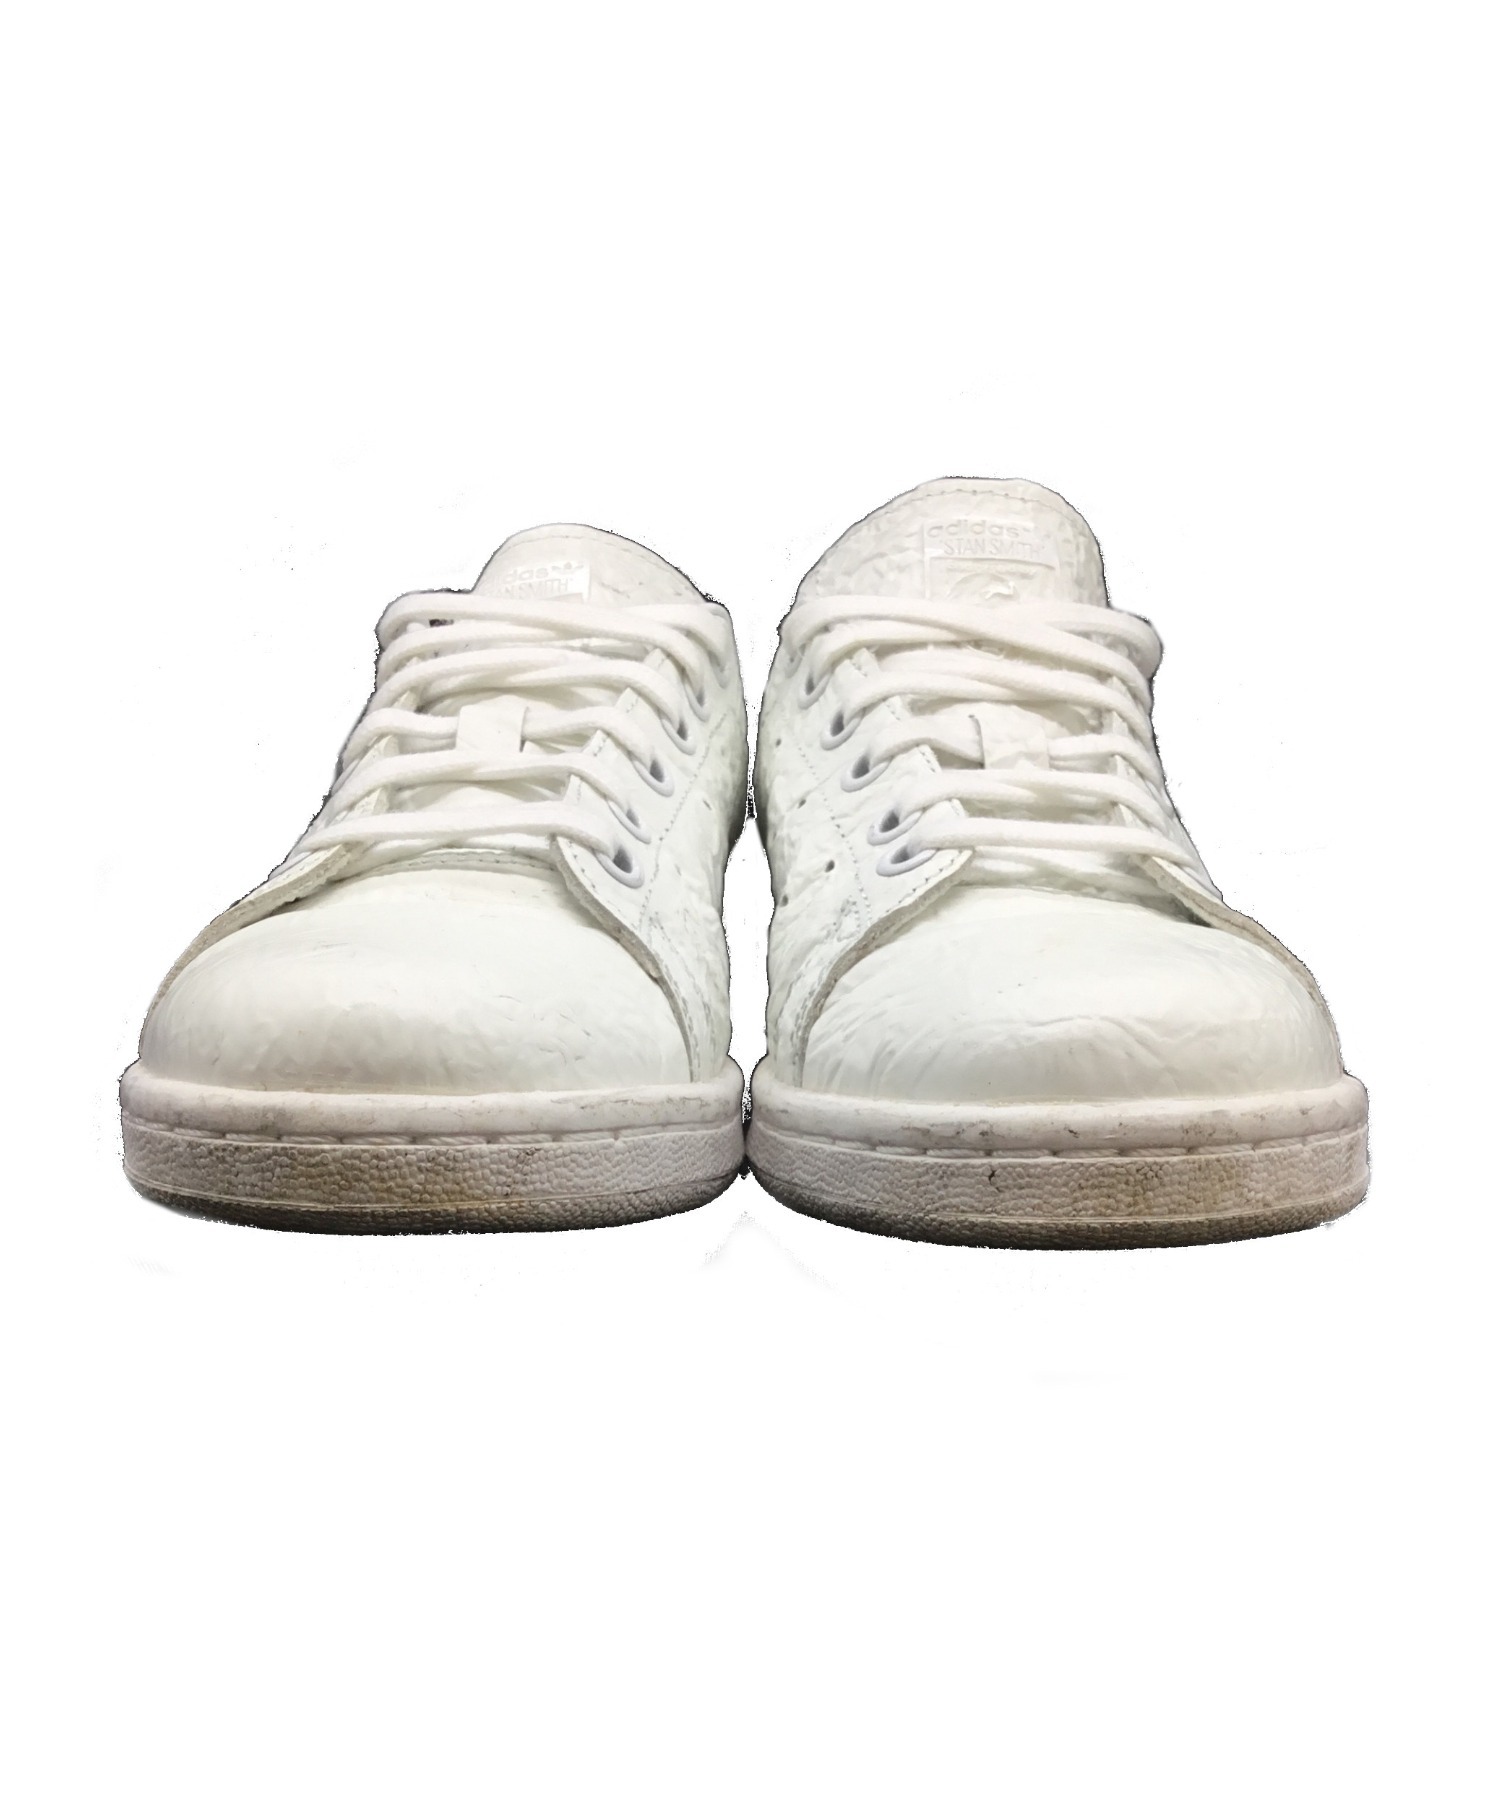 adidas (アディダス) STANSMITH /スタンスミス ホワイト サイズ:23